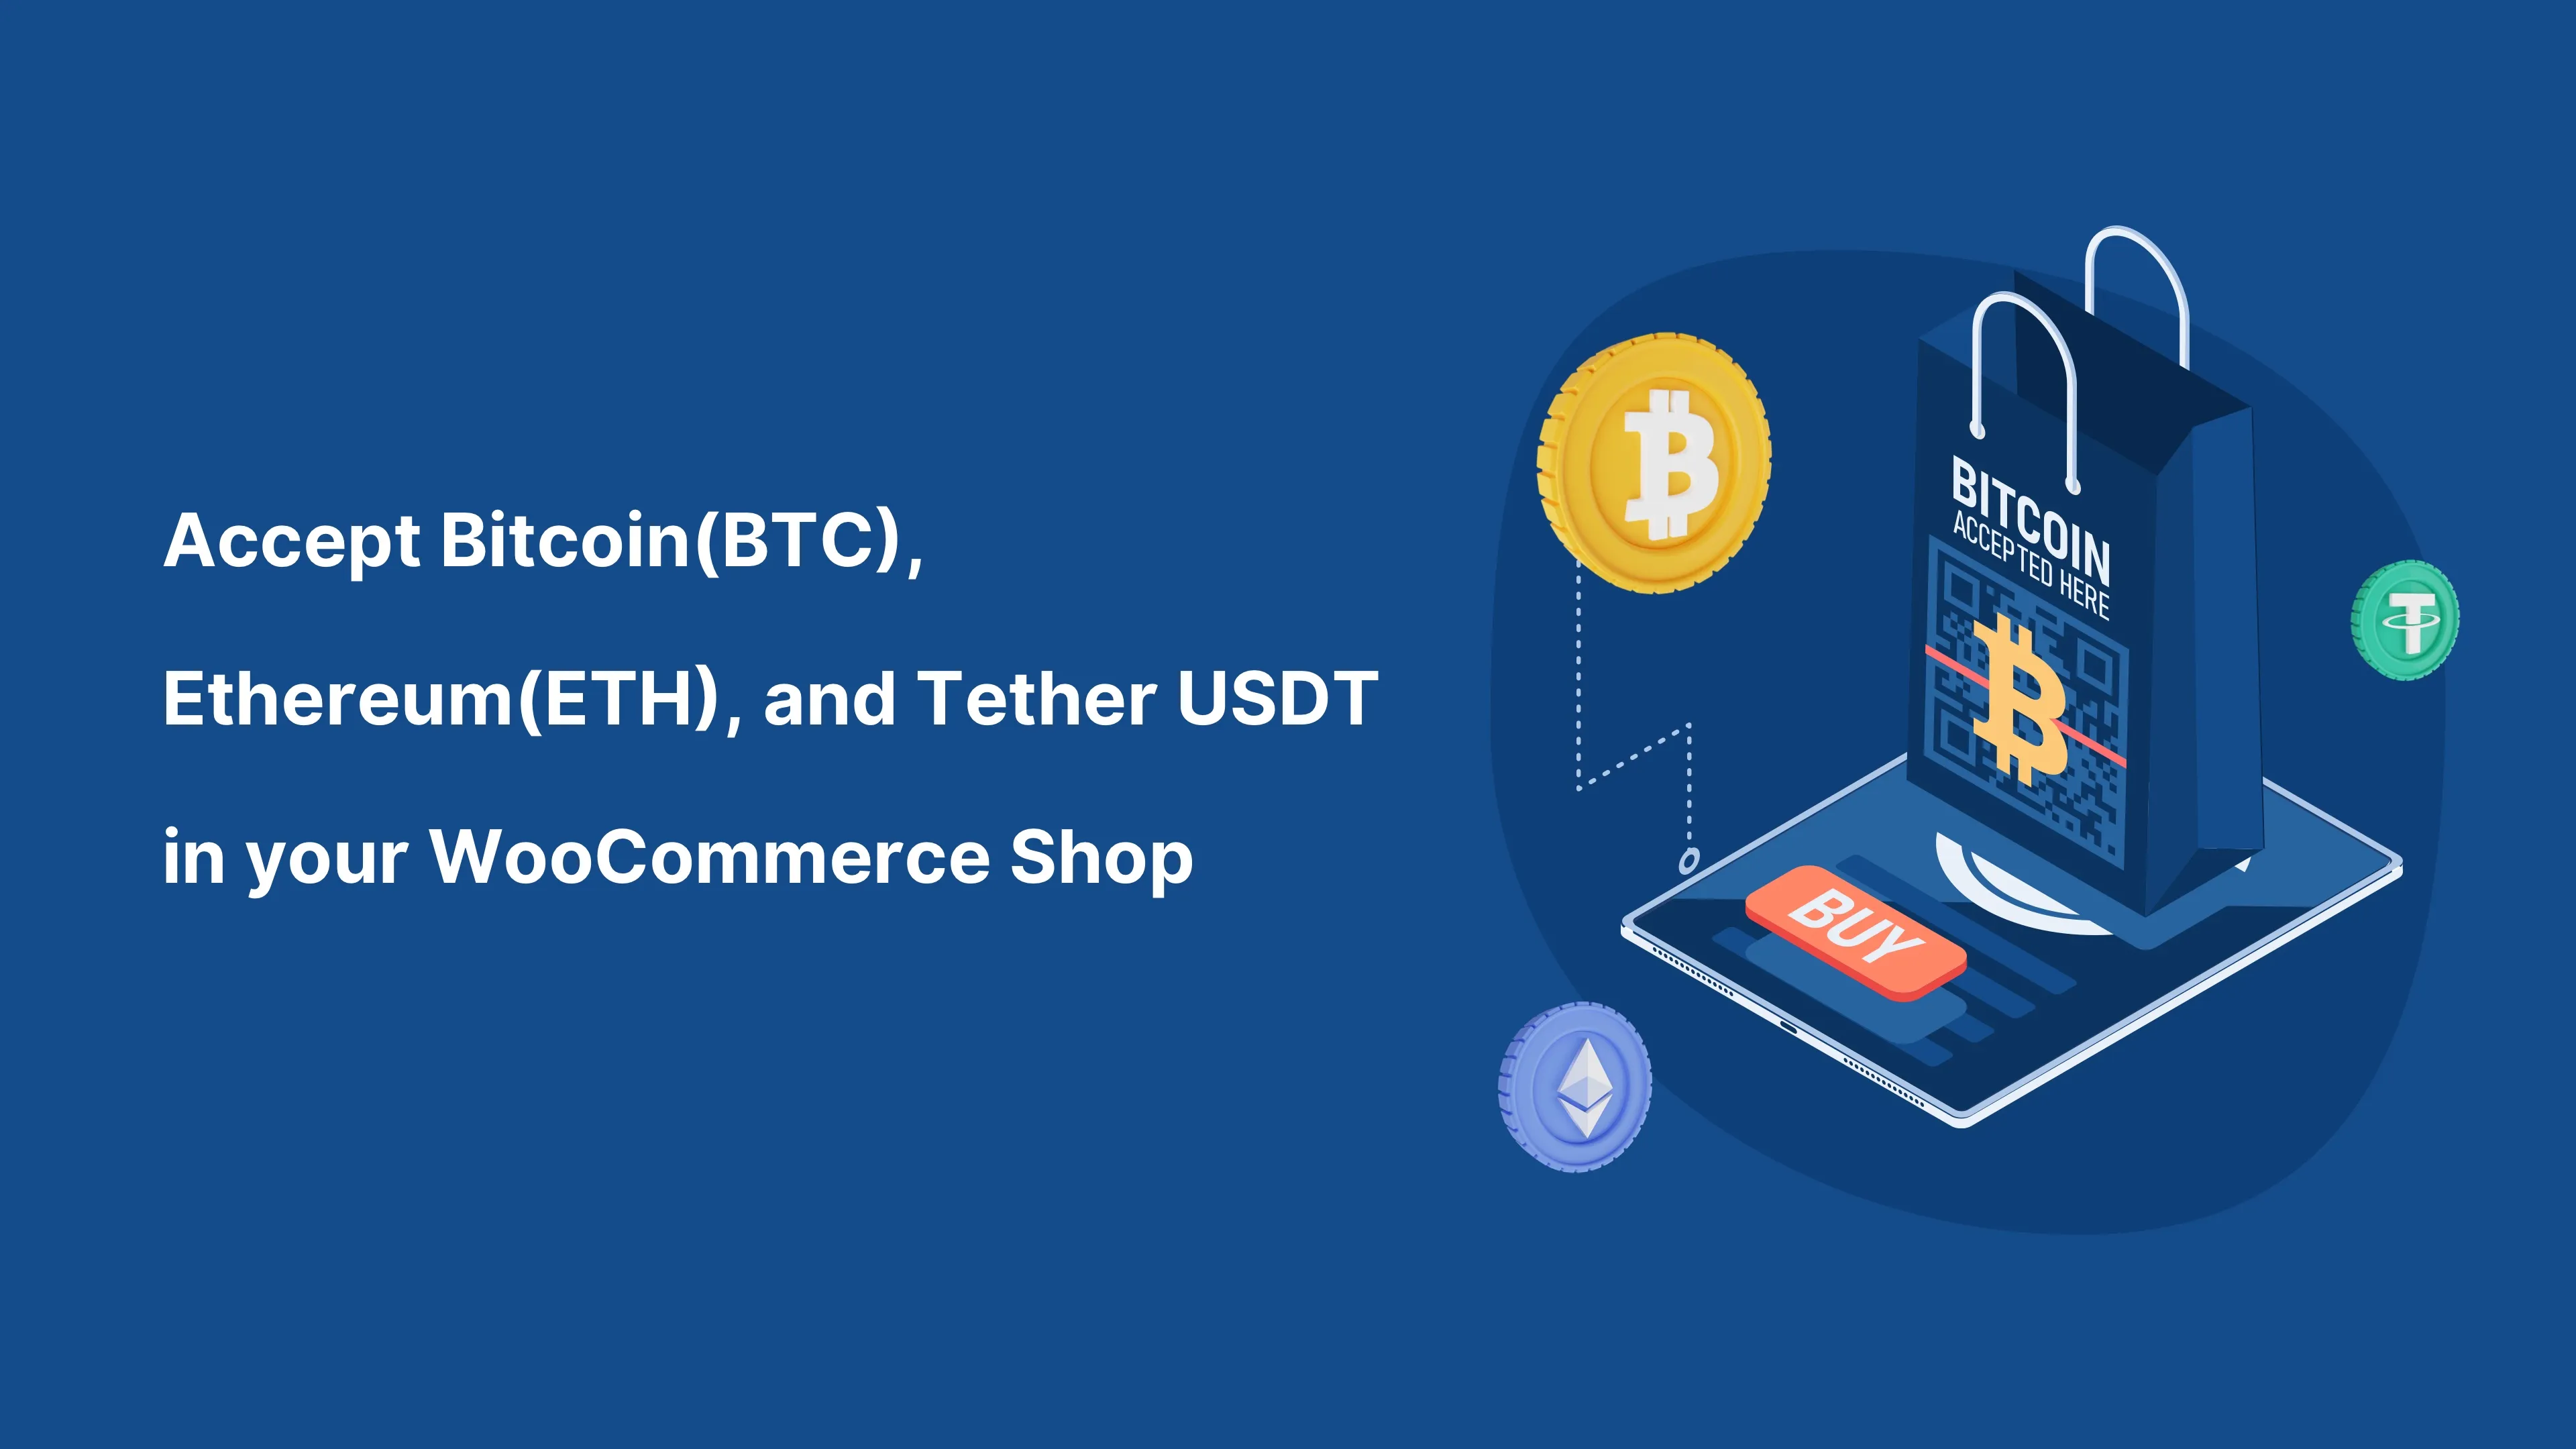 Accetta Bitcoin (BTC) e qualsiasi criptovaluta nel tuo negozio WooCommerce